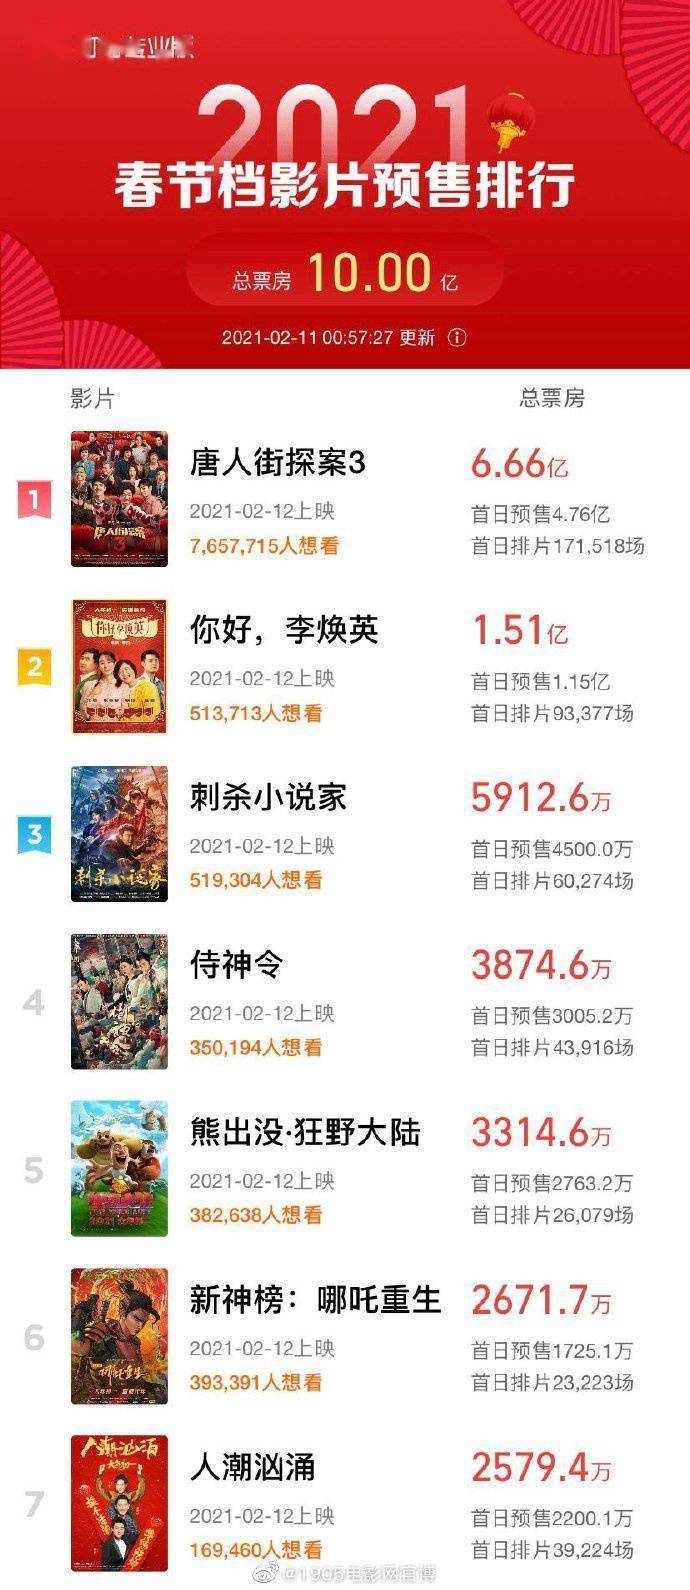 春节档预售票房破10亿 《唐人街探案3》位列第一